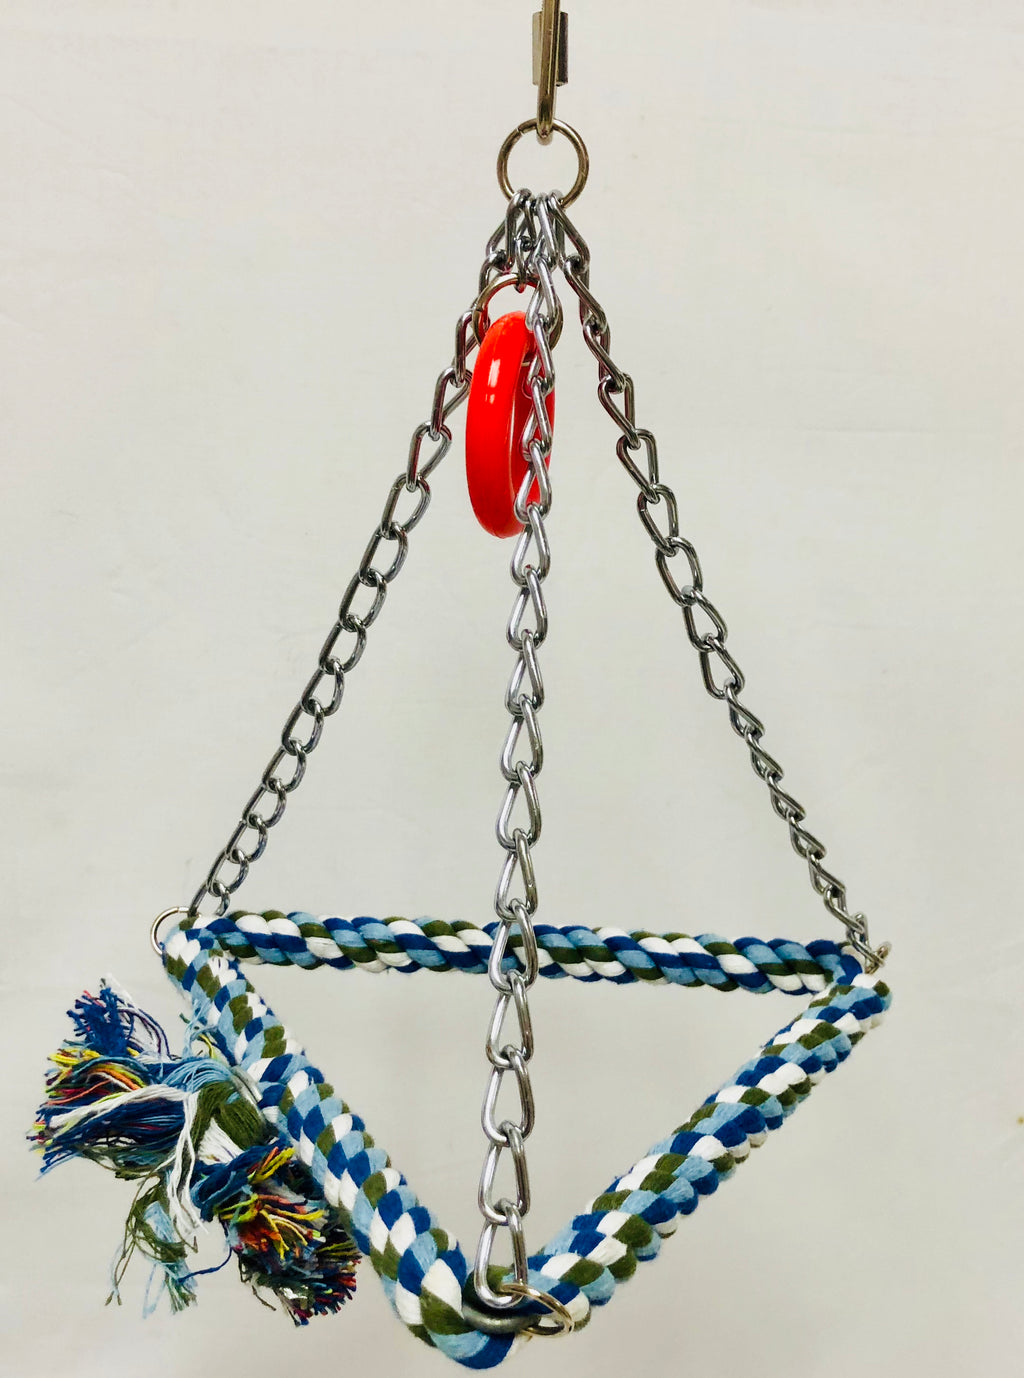 Tri-Chain Rope Swing - Medium